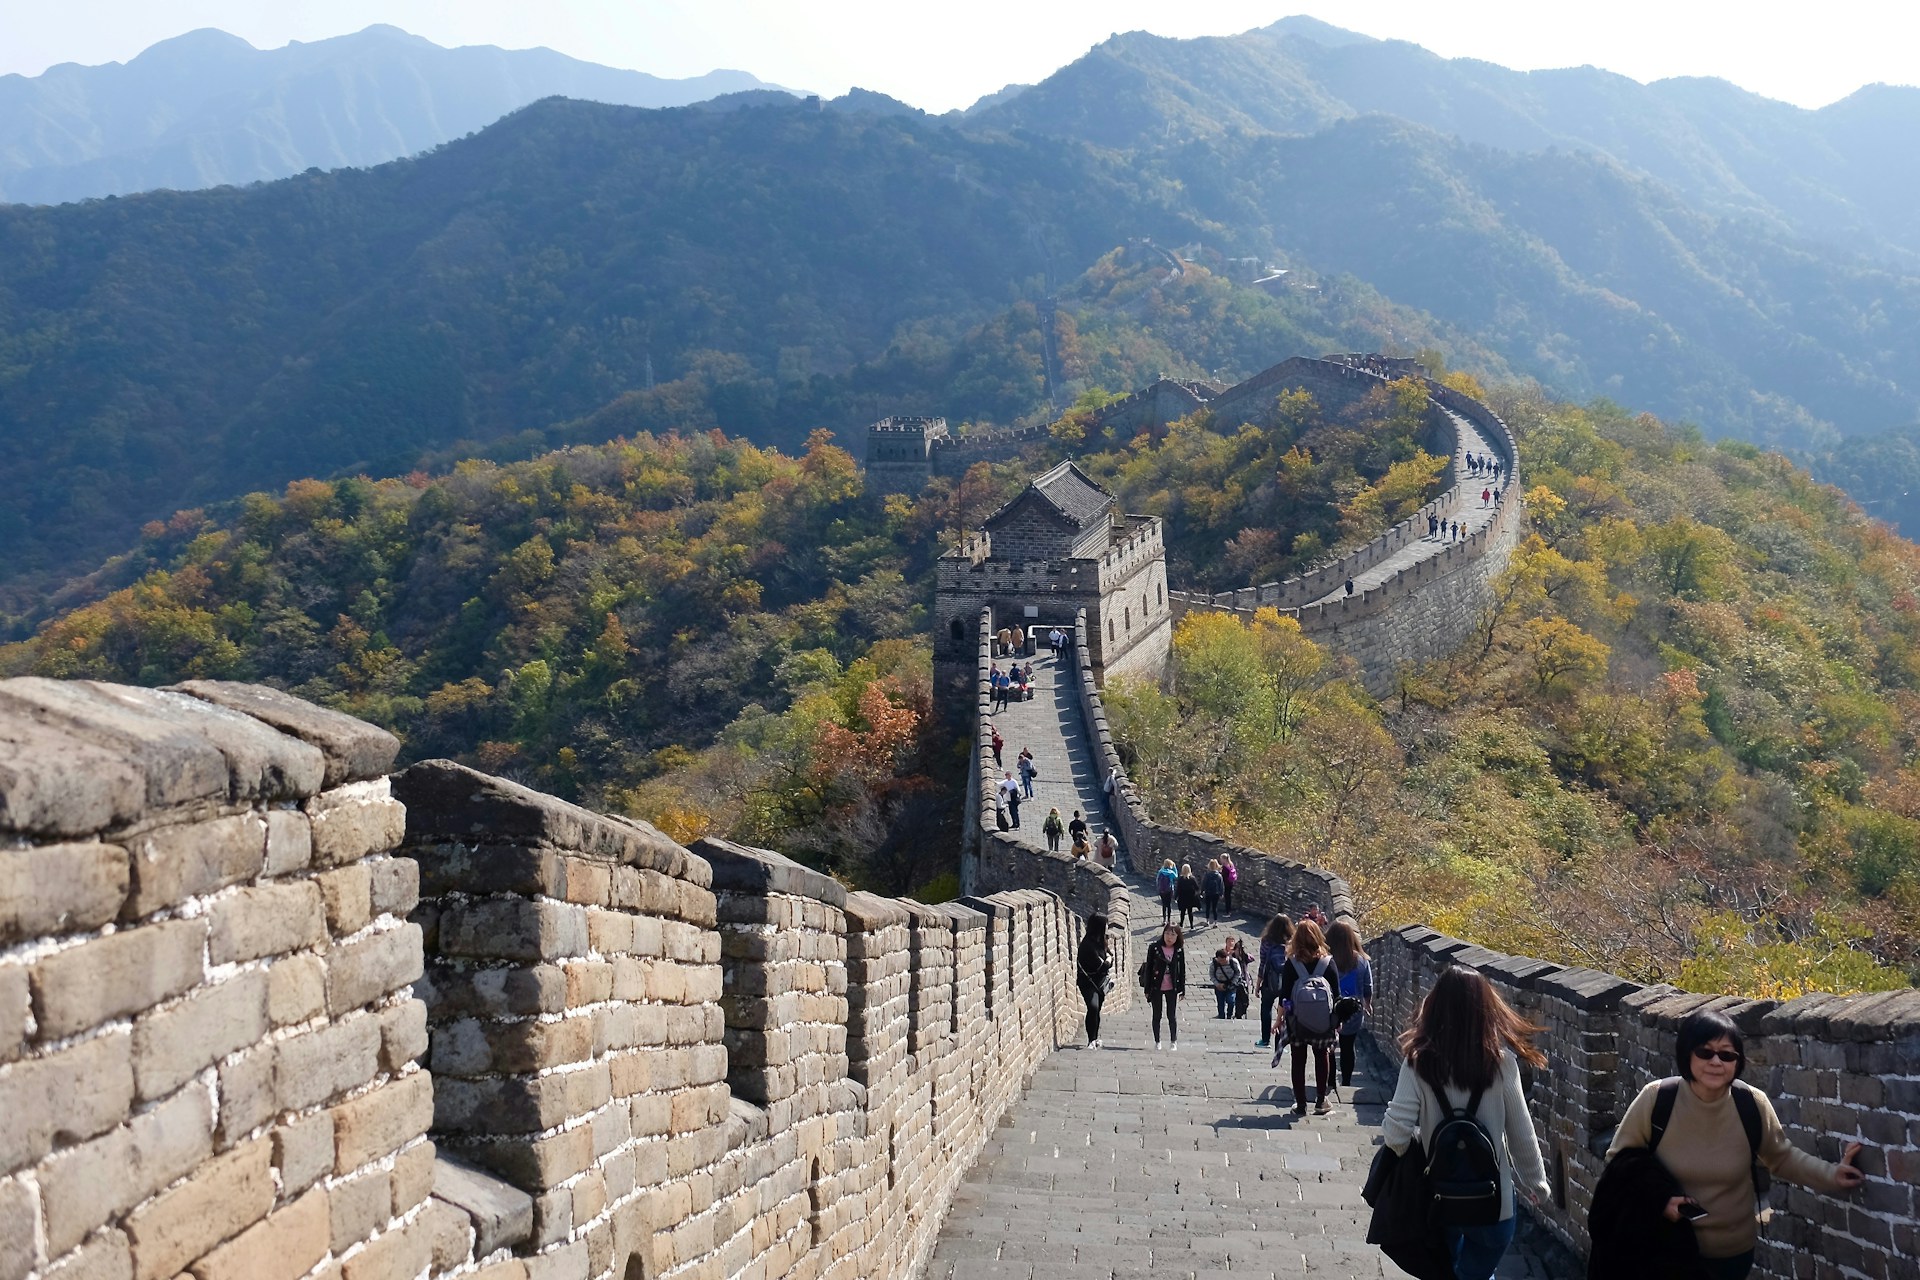 Hur lång är kinesiska muren